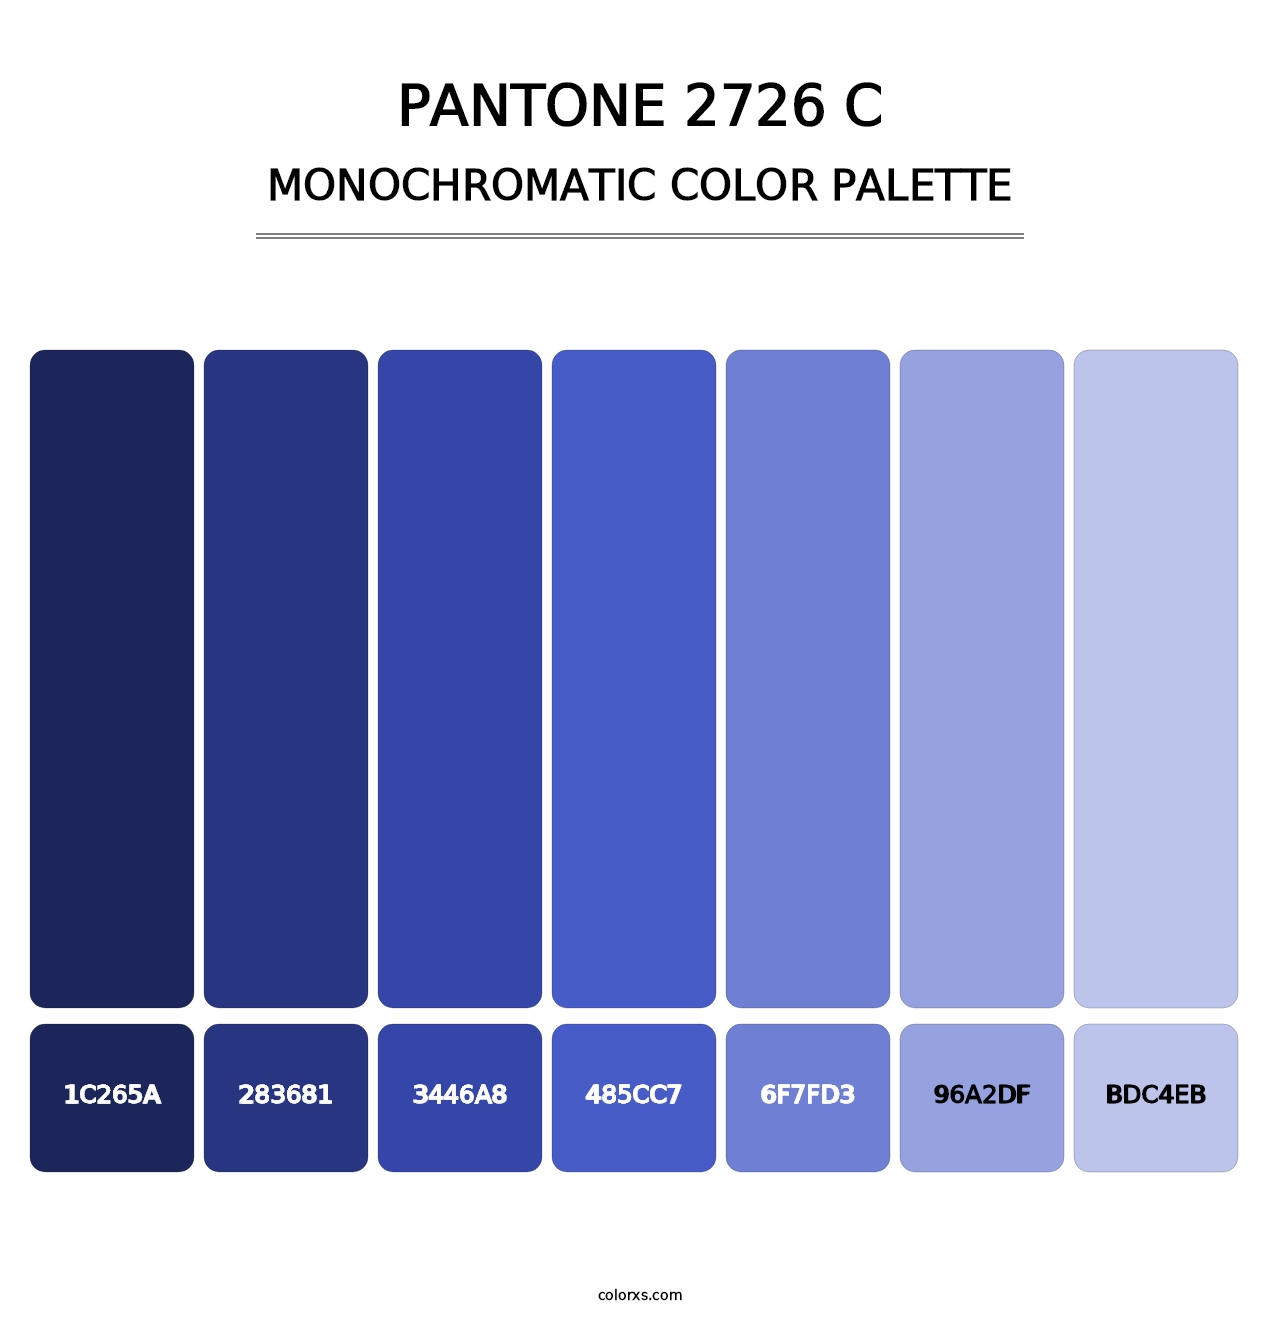 PANTONE 2726 C - Monochromatic Color Palette